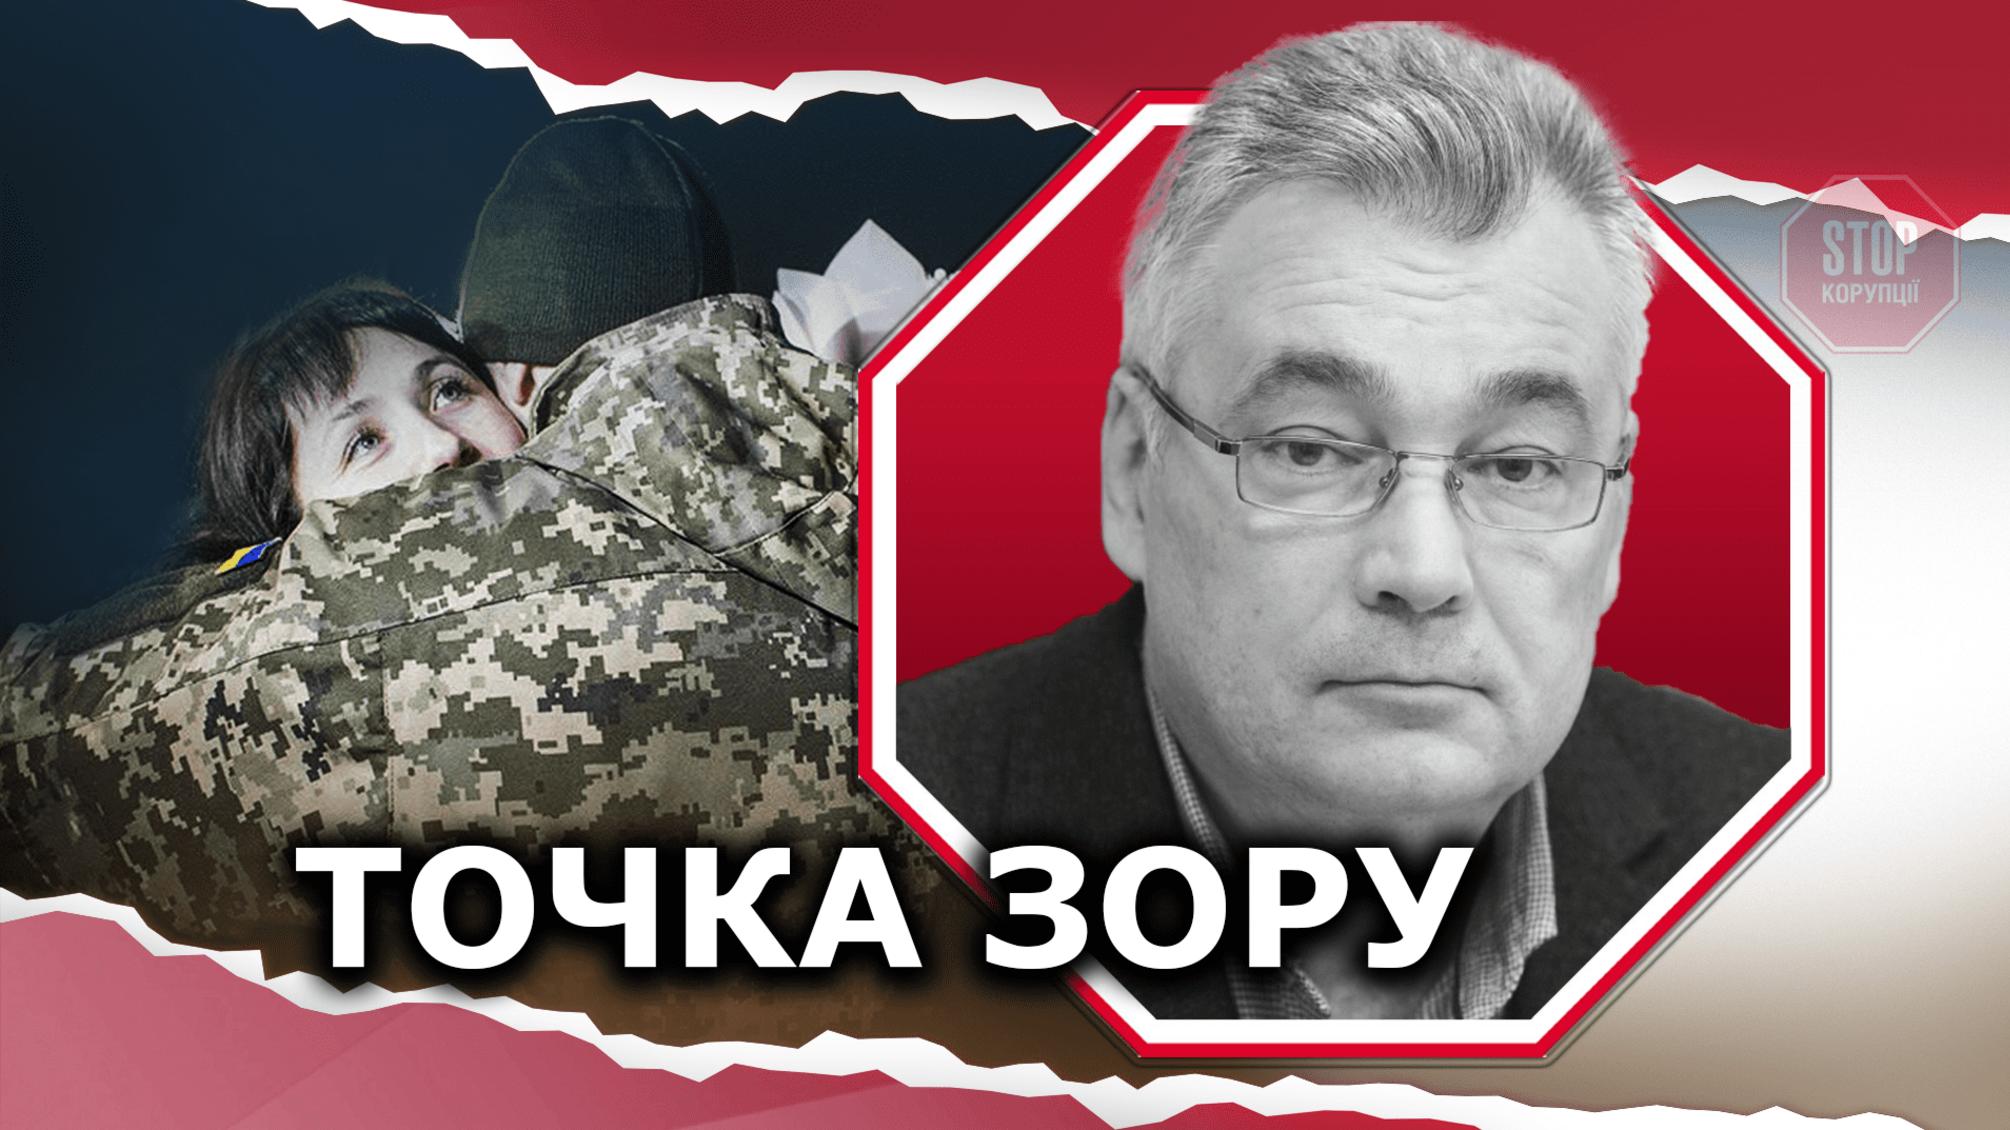 Звільнення українських бранців – справа спецслужб, а не політиків